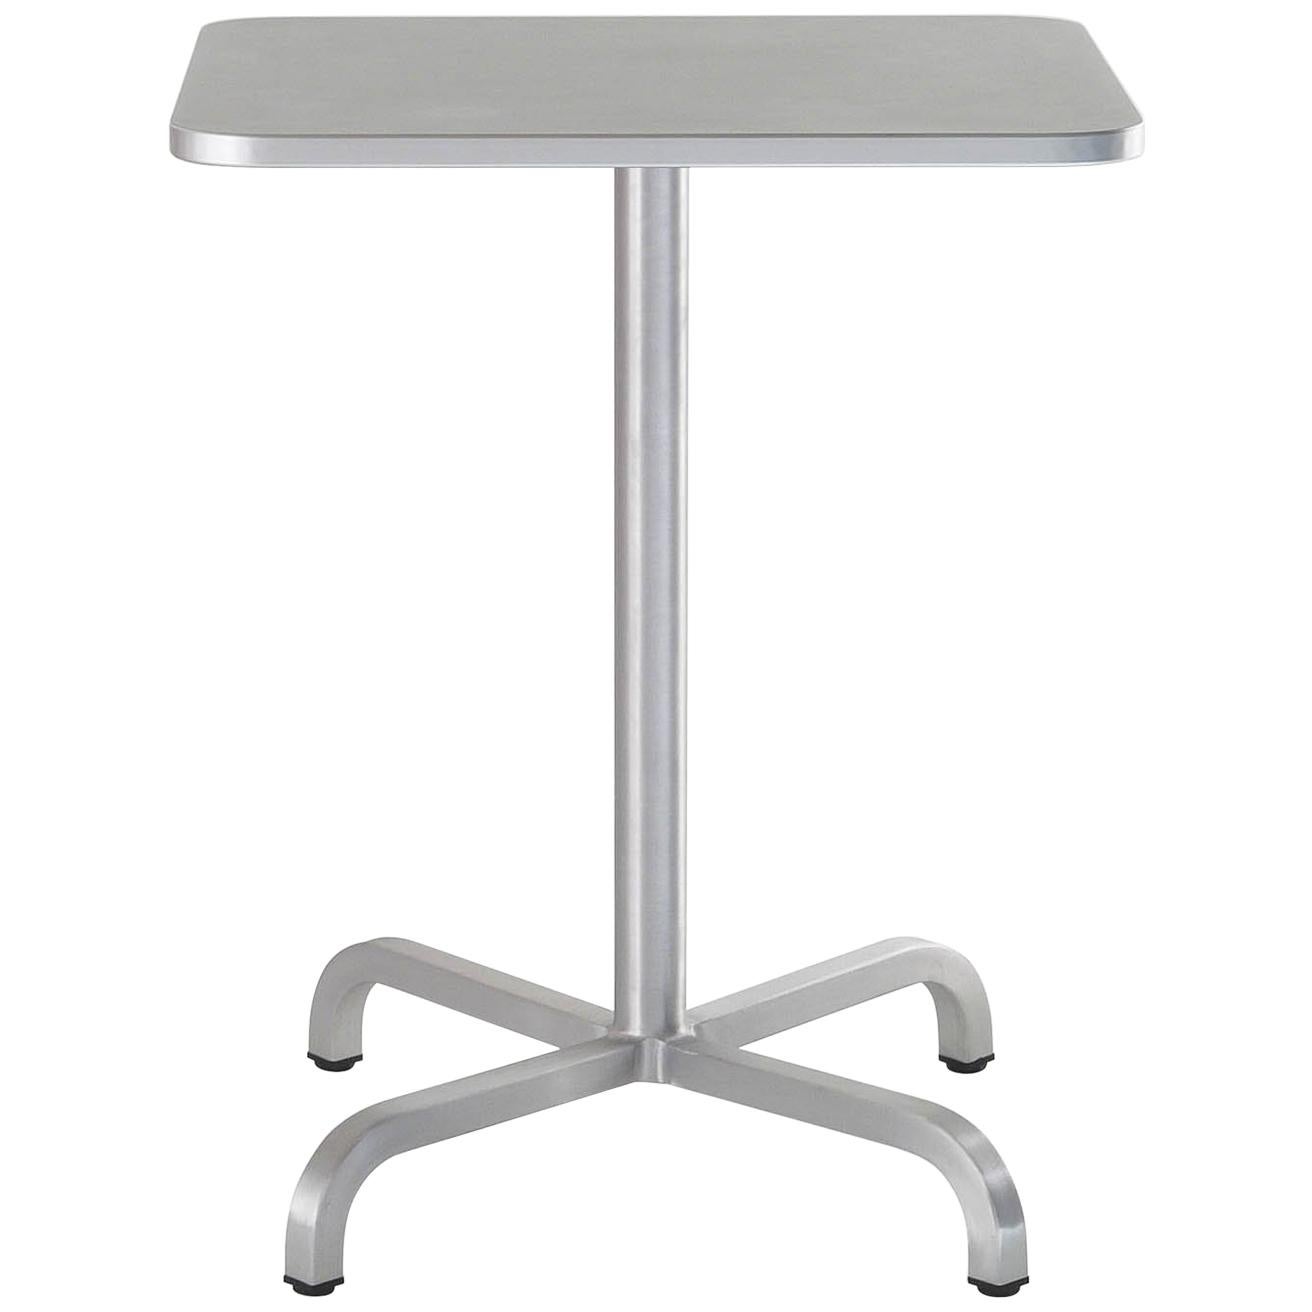 Petite table basse carrée Emeco 20-06 avec plateau en stratifié gris par Norman Foster